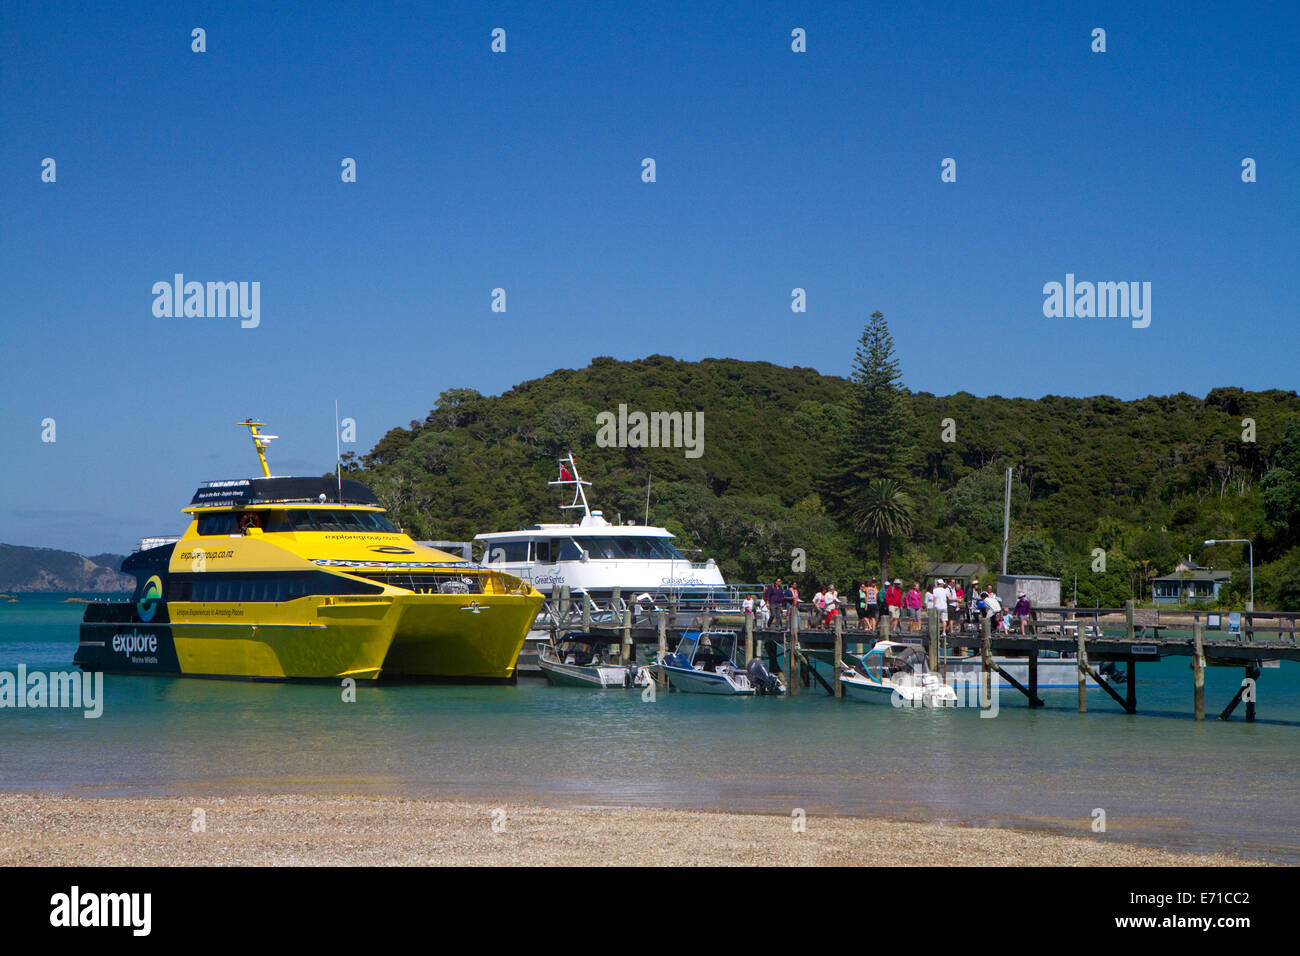 Ausflugsboote dock auf einer Insel in der Bay of Islands, Nordinsel, Neuseeland. Stockfoto